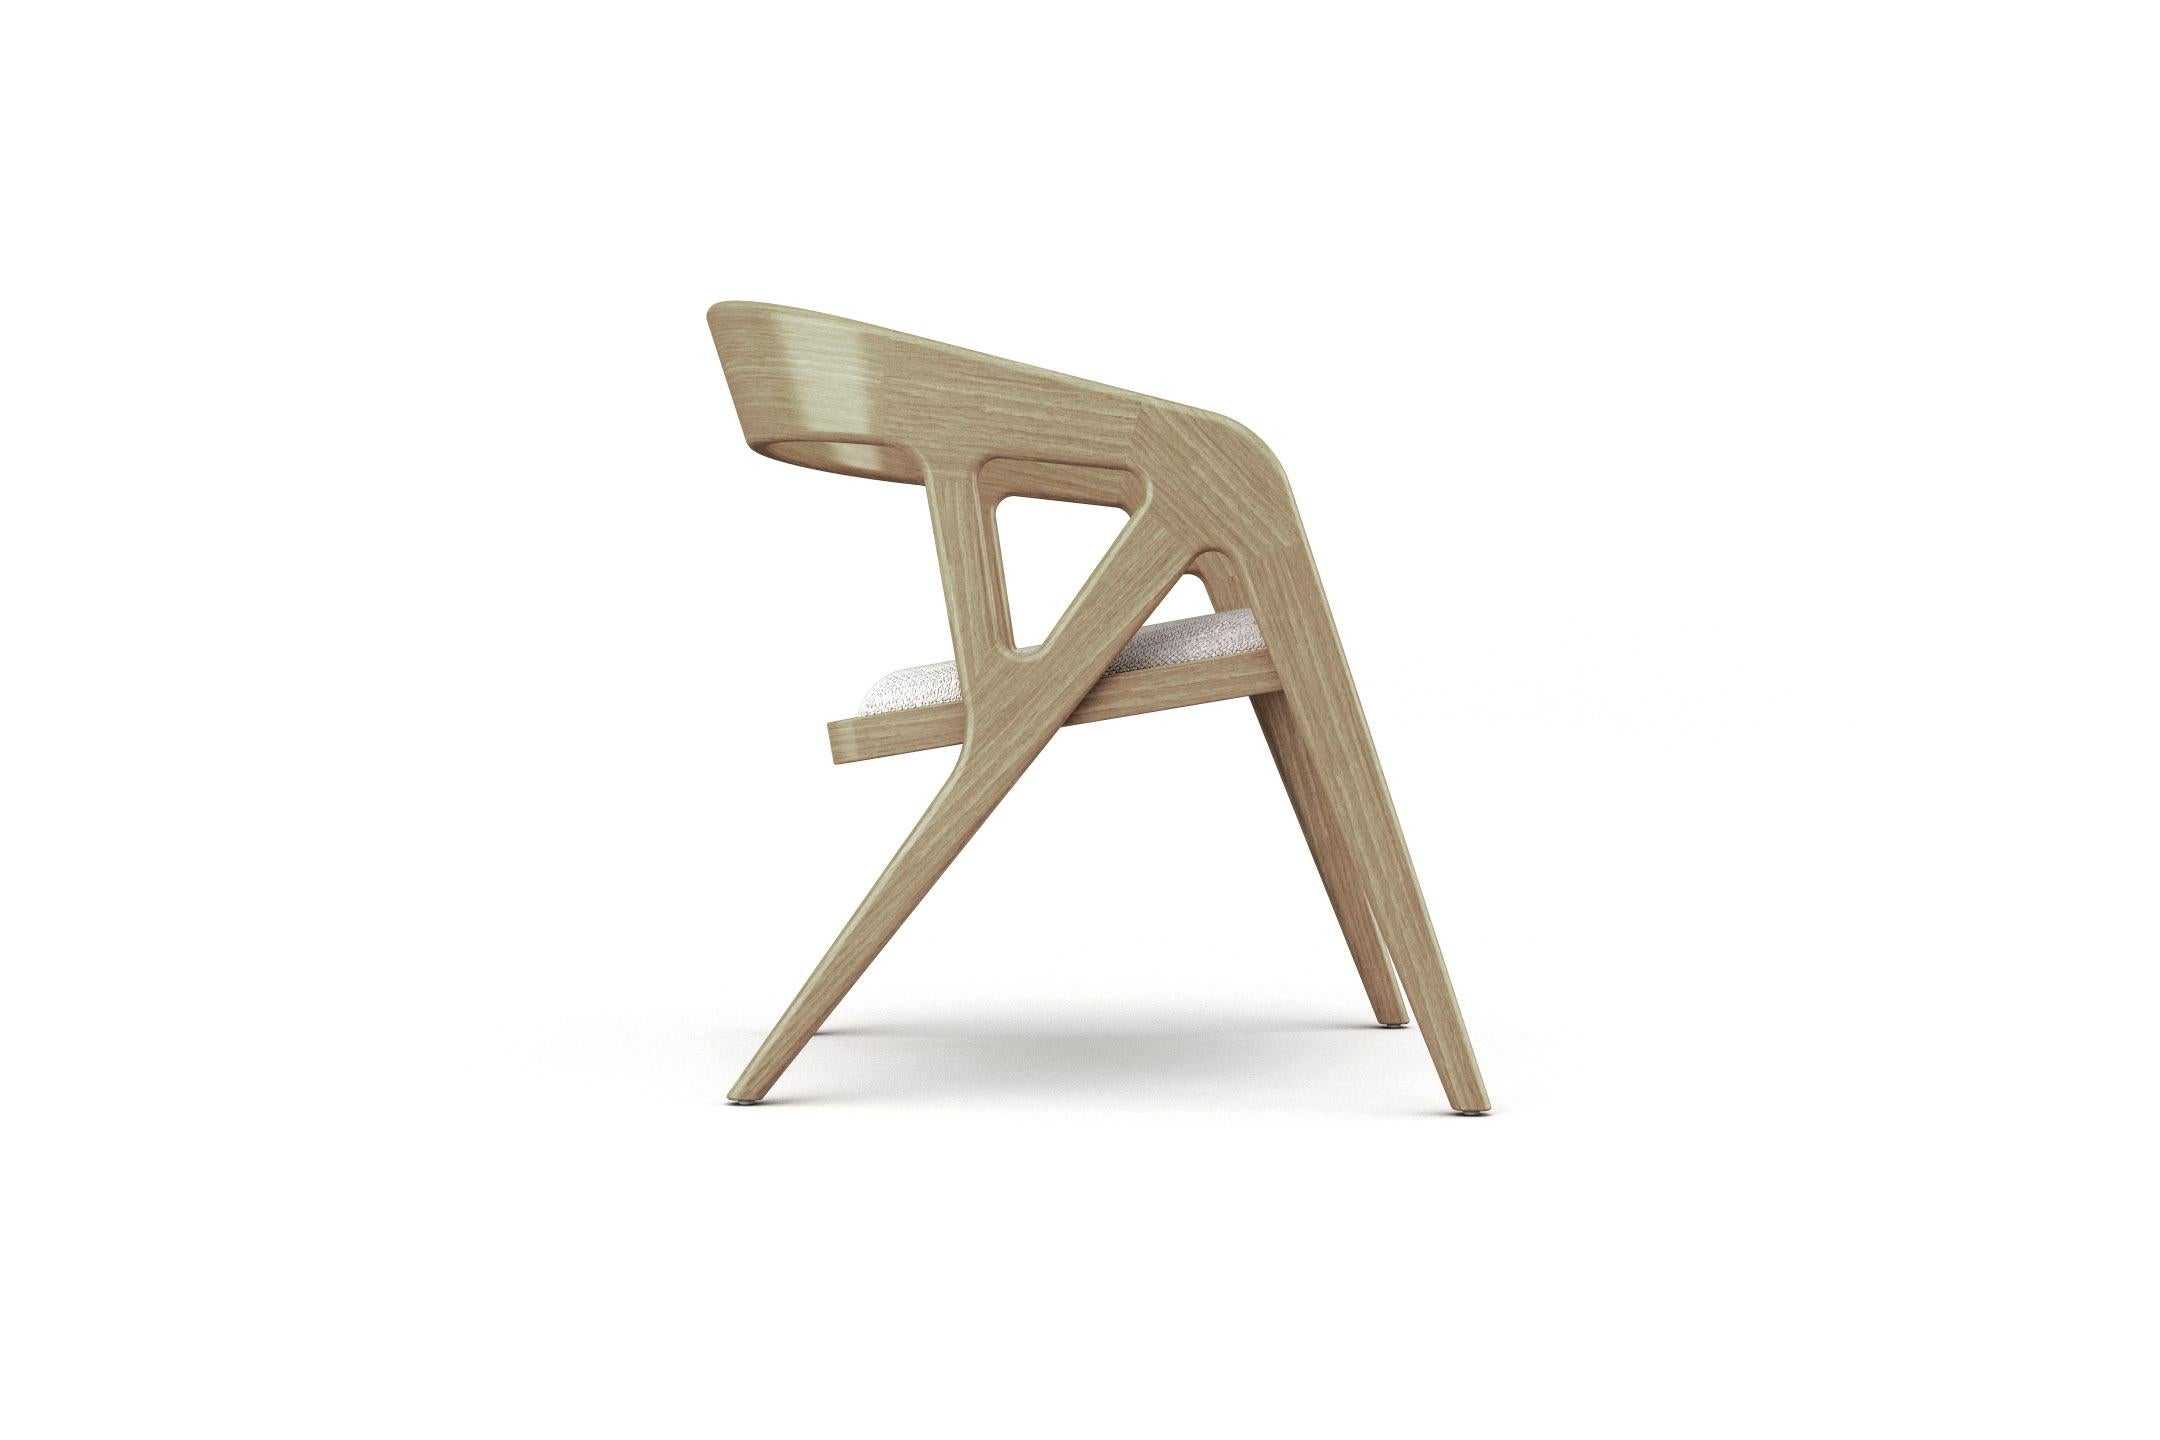 La forme organique du fauteuil Branch a été conçue pour s'inspirer de ses racines naturelles, ramenant ainsi un peu de l'extérieur dans nos maisons. Sa structure est façonnée en bois massif courbé avec une assise rembourrée qui peut être